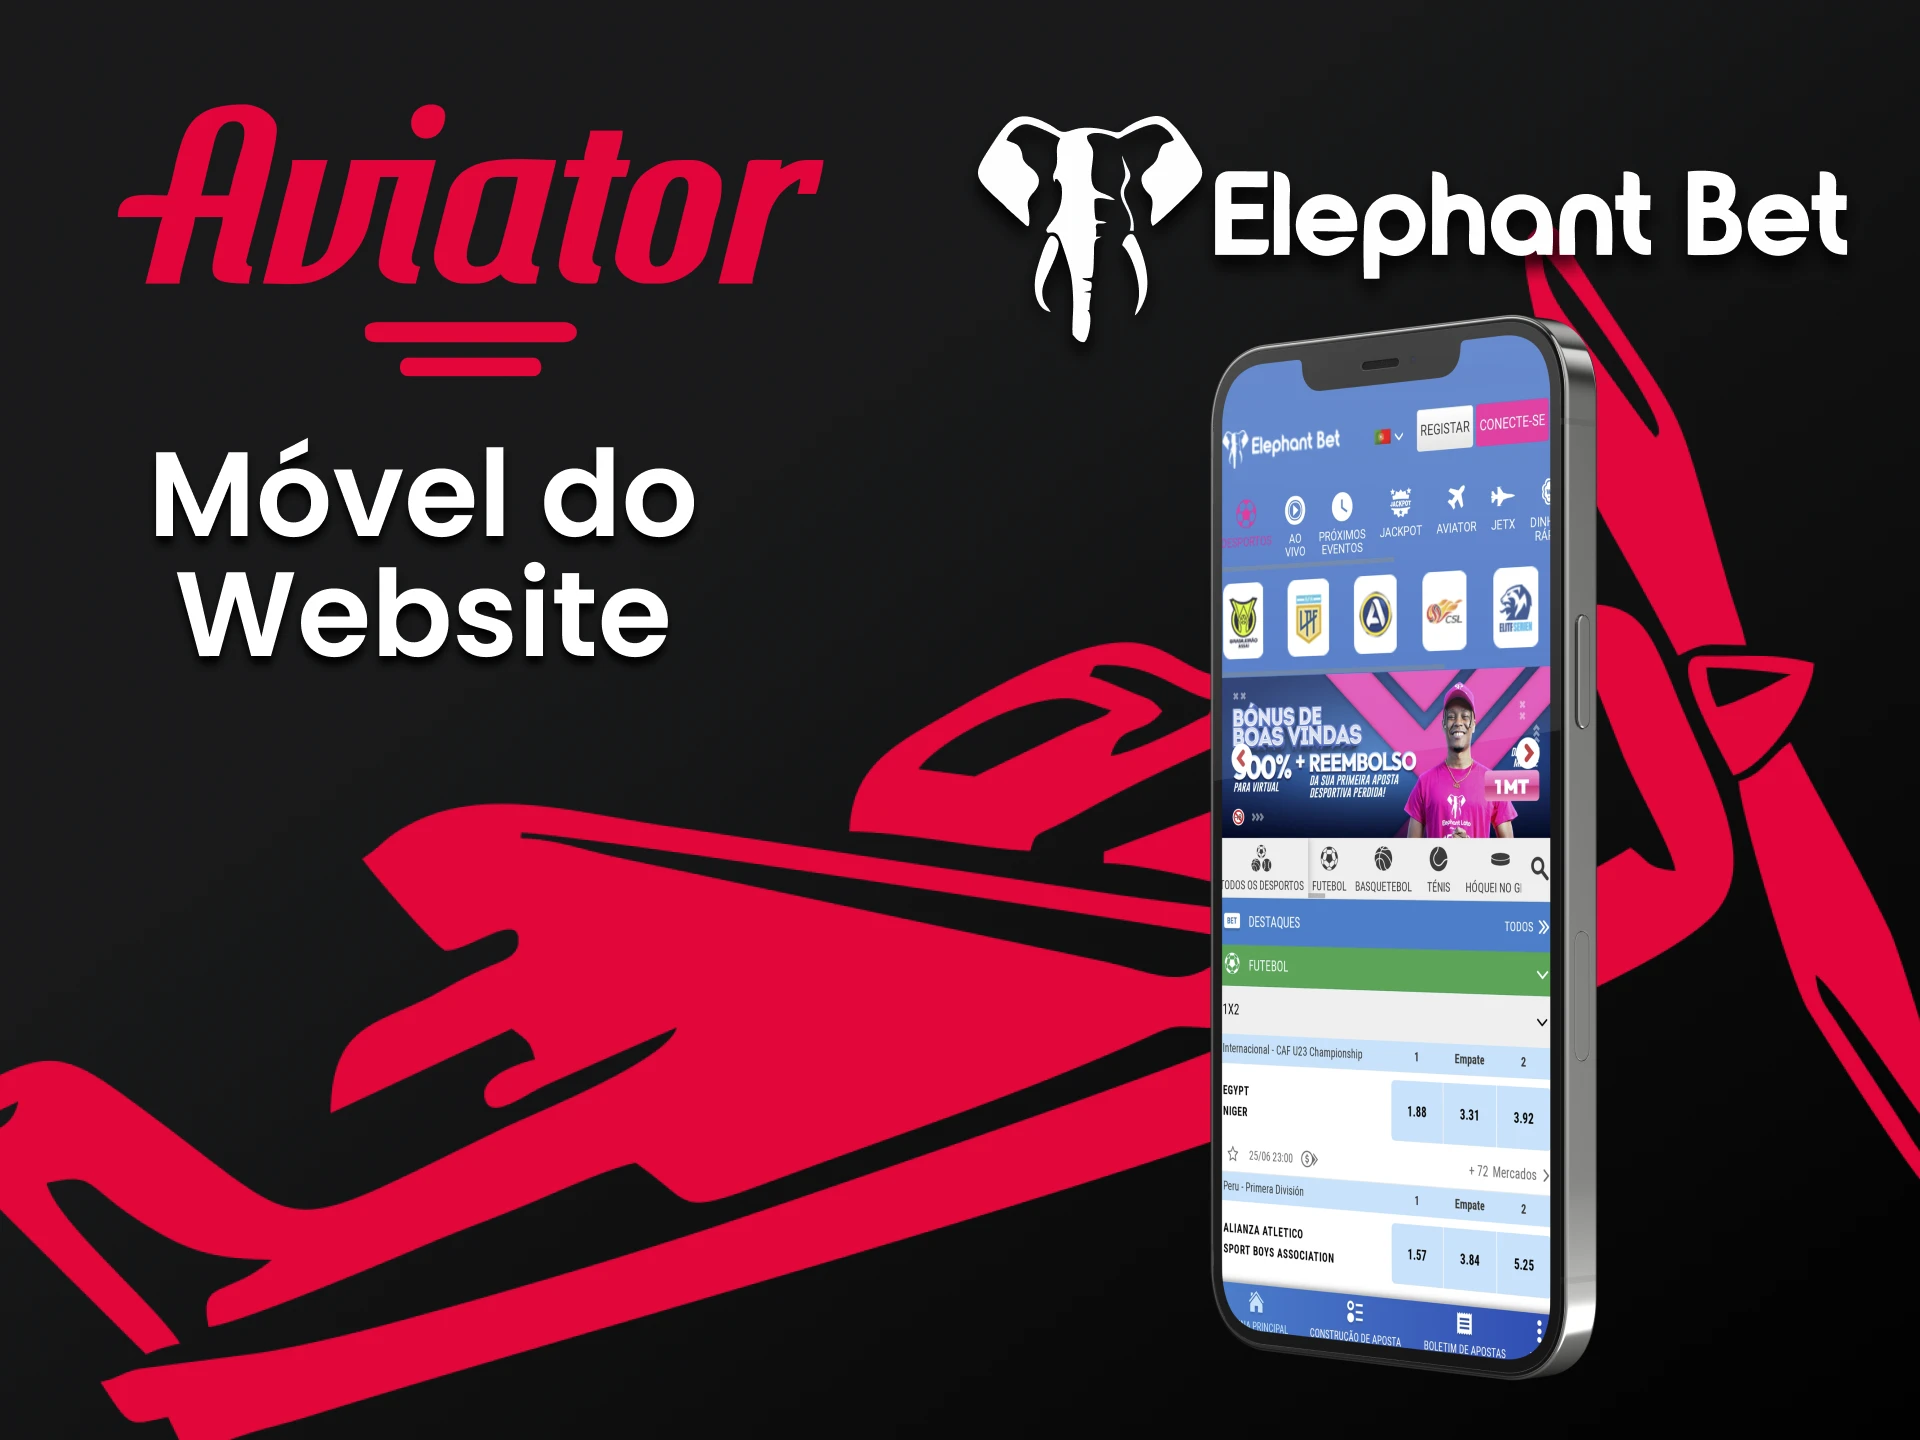 Visite a versão móvel do site da Elephantbet.